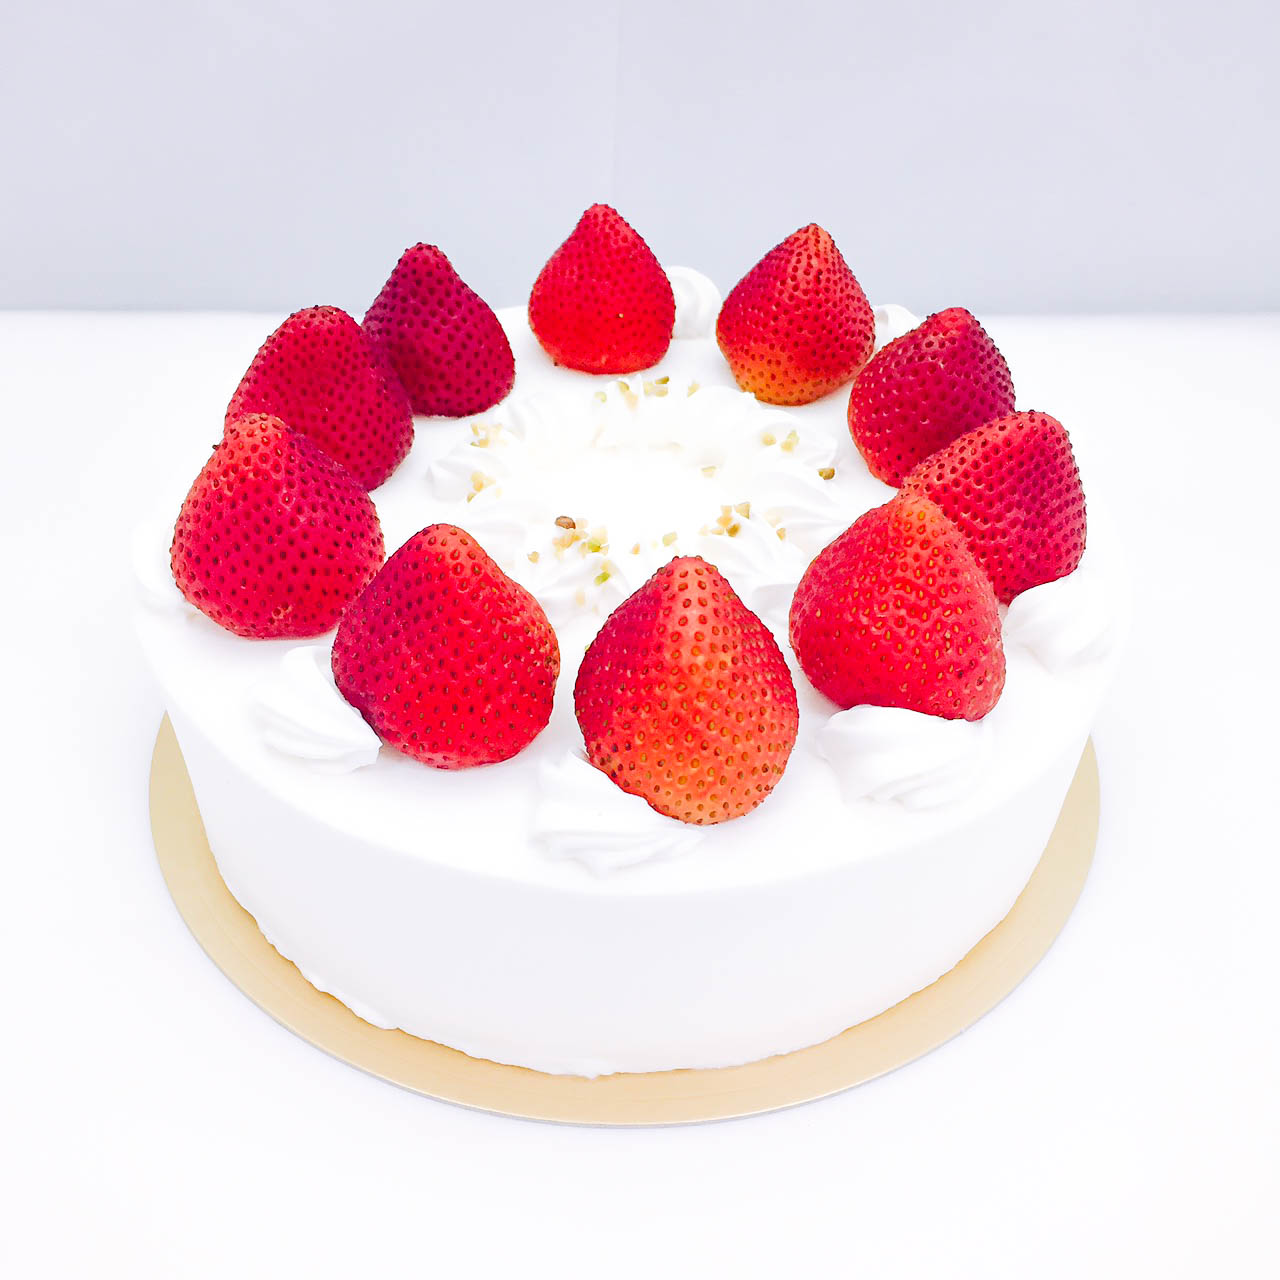 ショートケーキ(10名様) | ボンファン | ケーキ予約システム